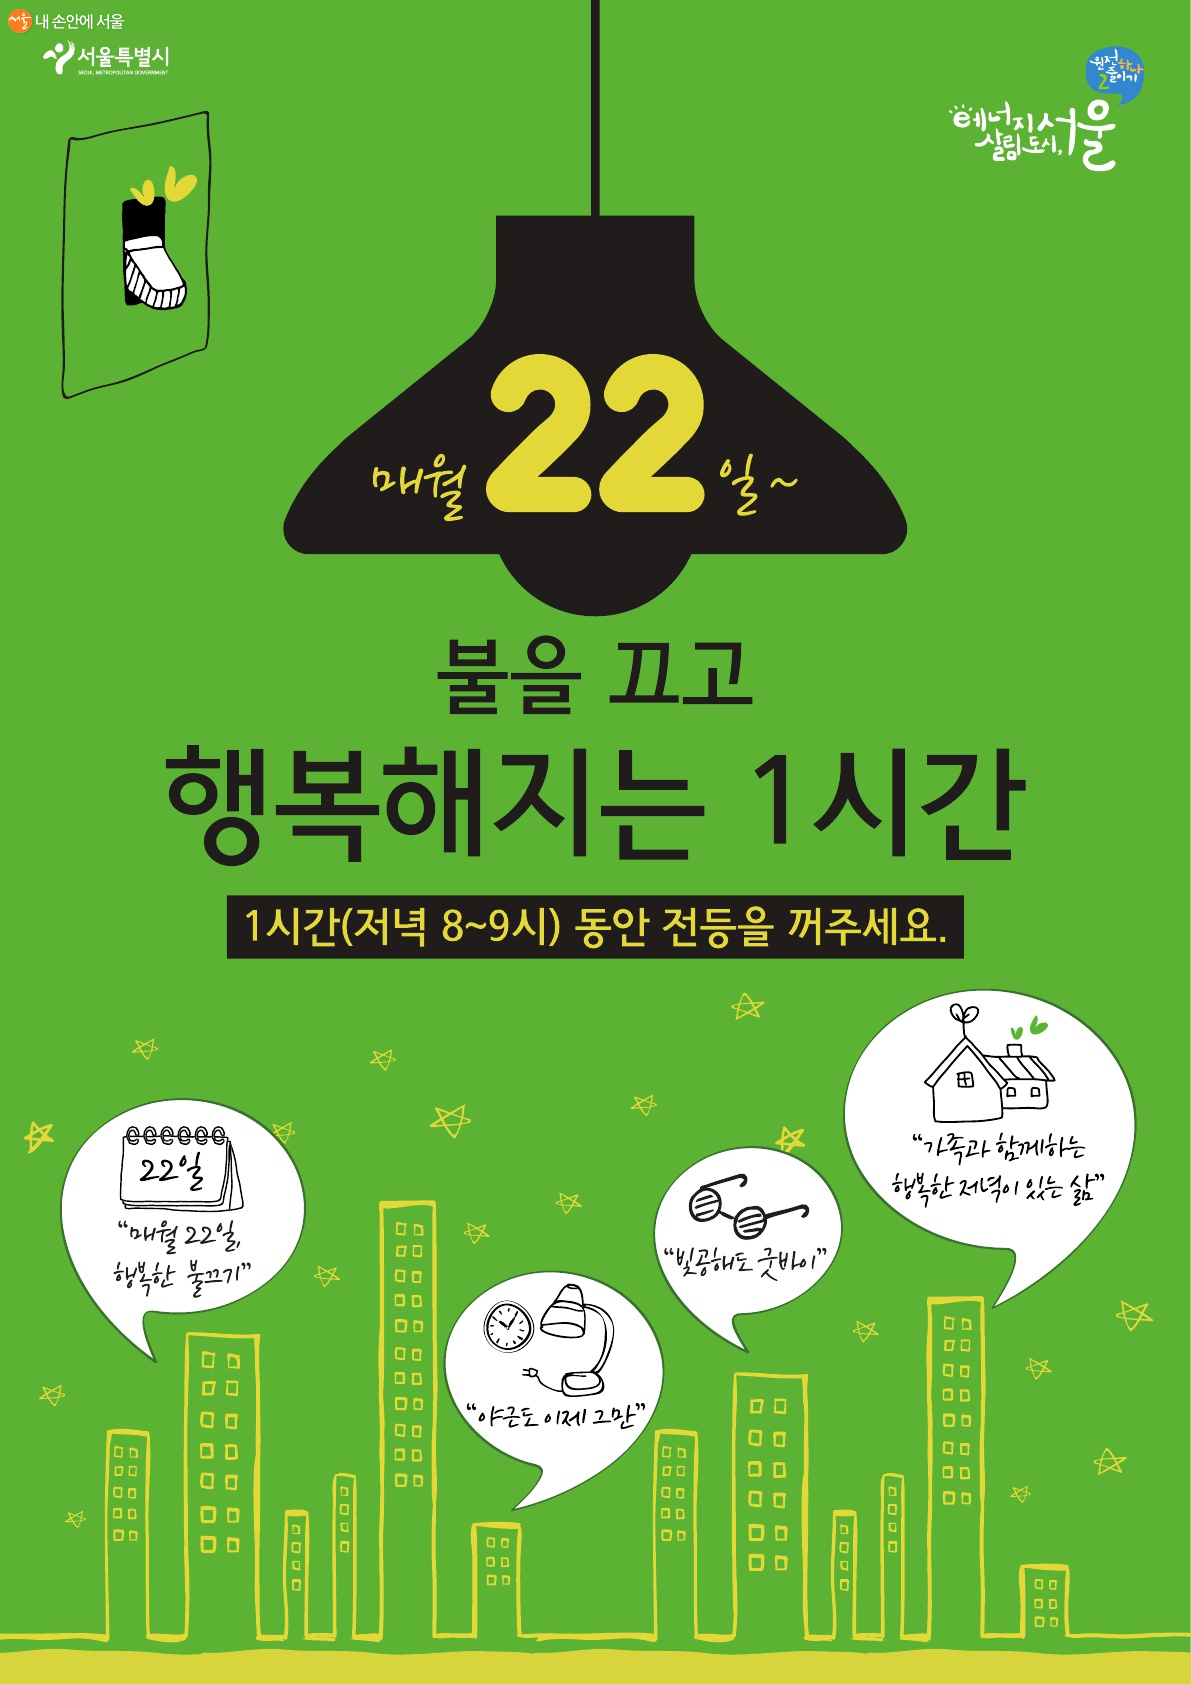 서울시는 매달 22일 저녁 '행복한 불끄기' 캠페인을 진행한다 